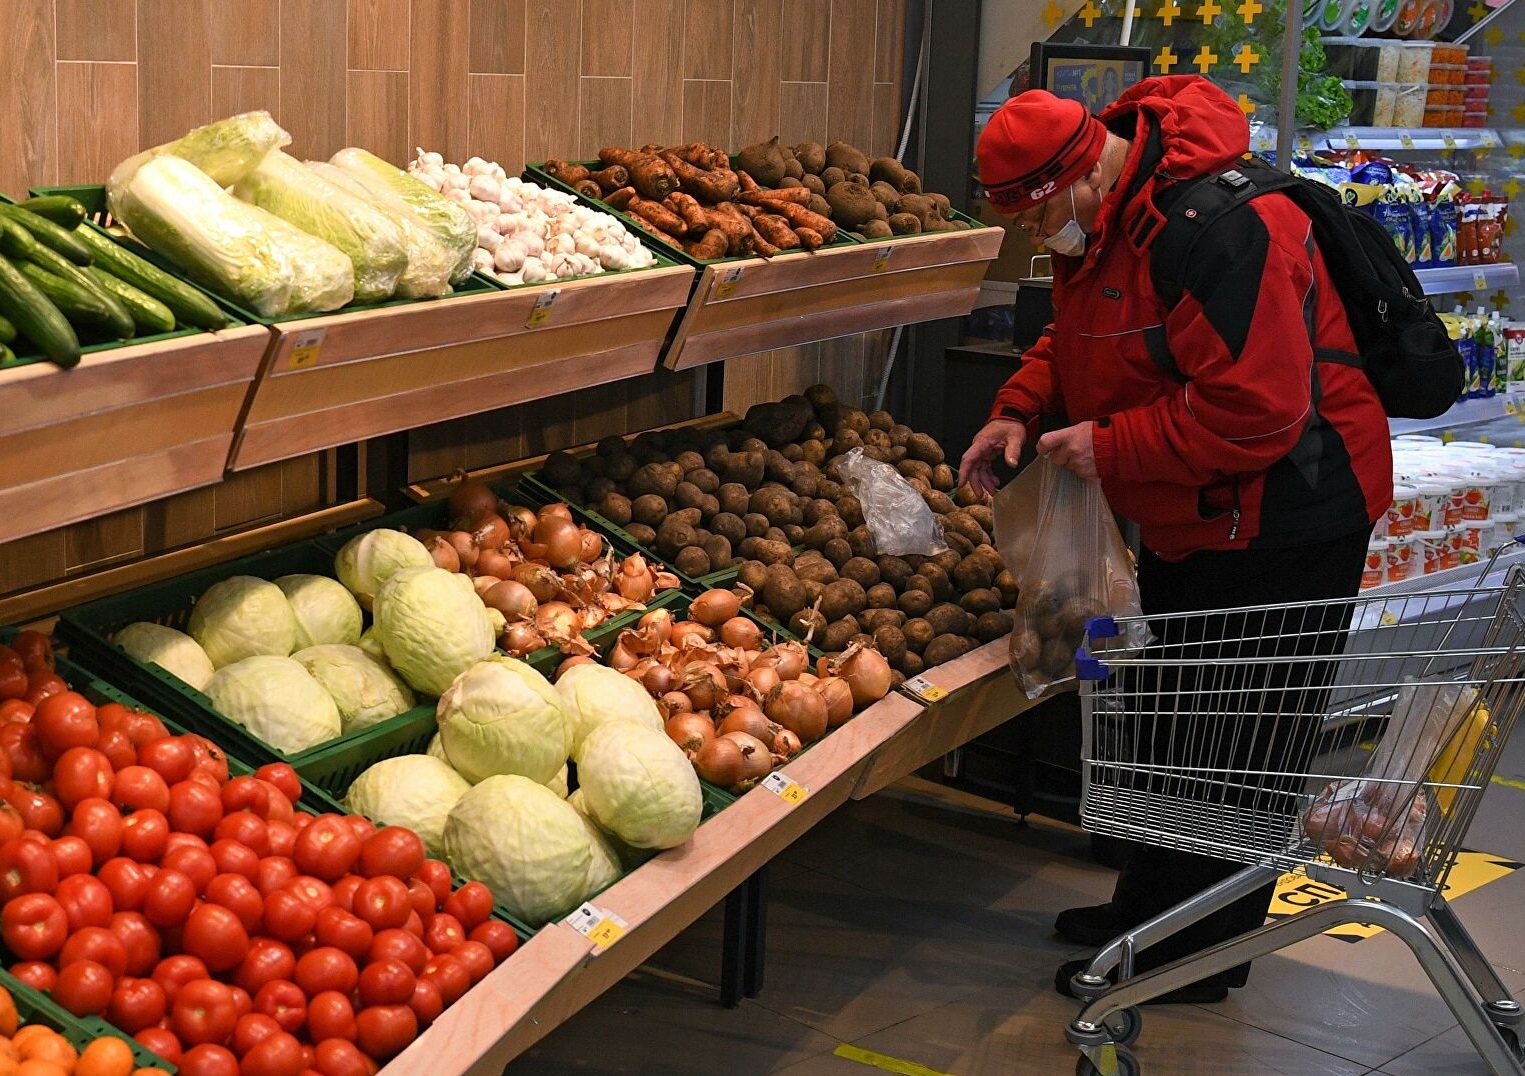 Цены на овощи “борщевого набора“ вырастут в 2022 году: когда будет новая волна подорожания продуктов